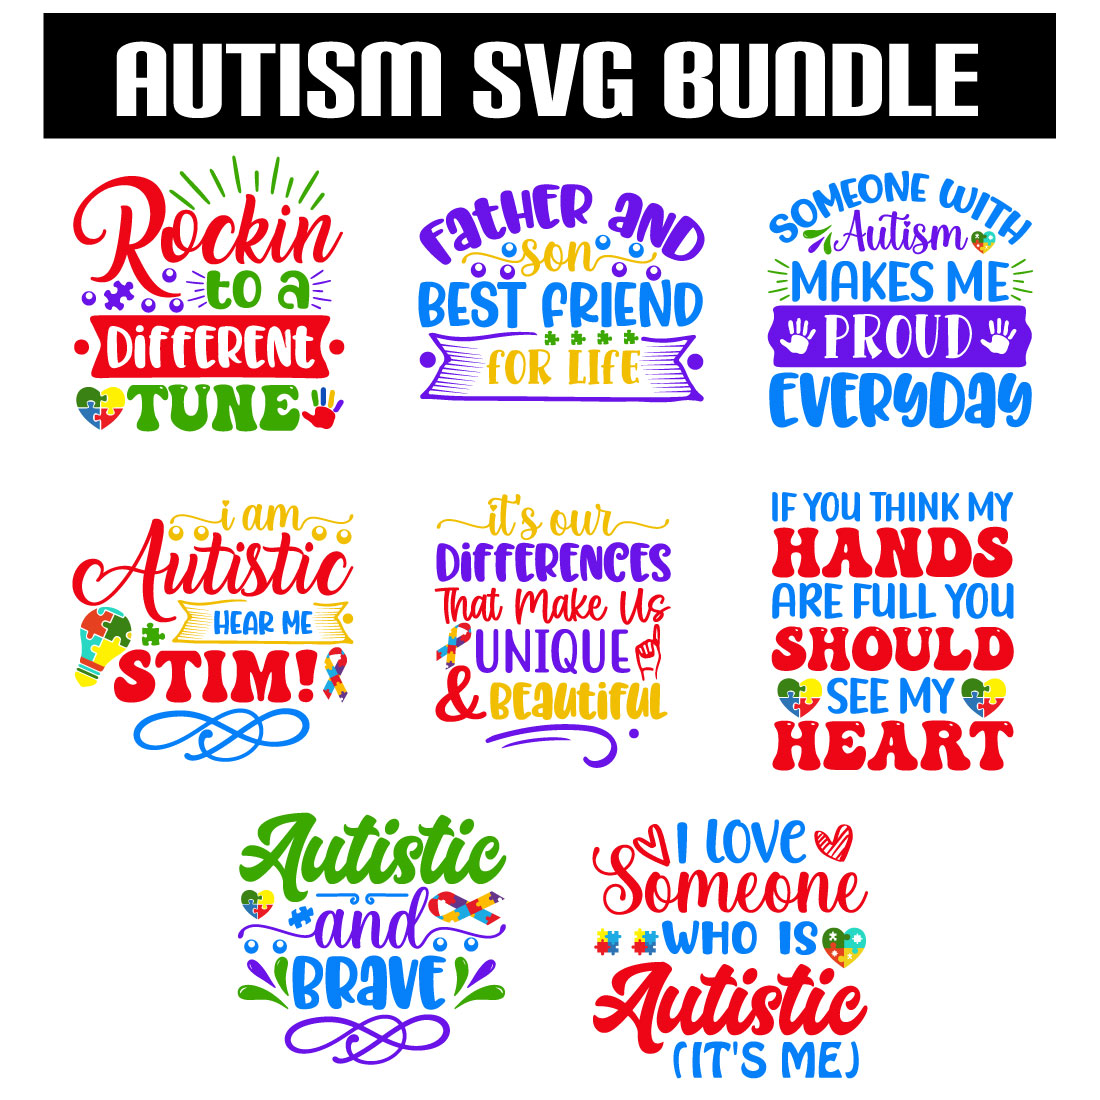 Autism Svg Bundle preview image.